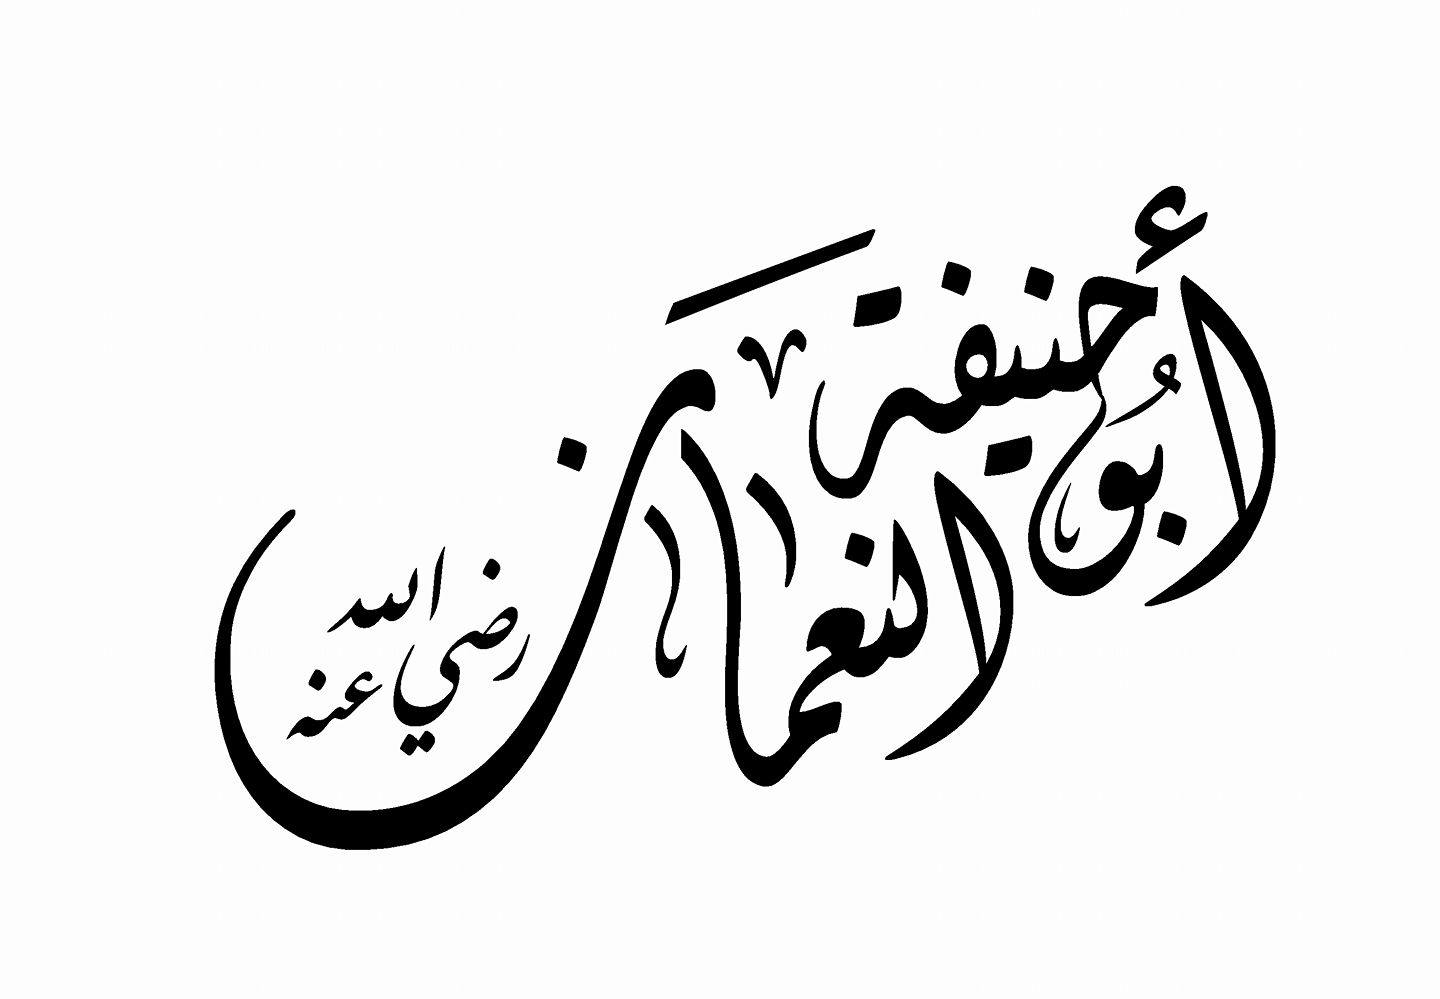 الامام أبو حنيفة النعمان